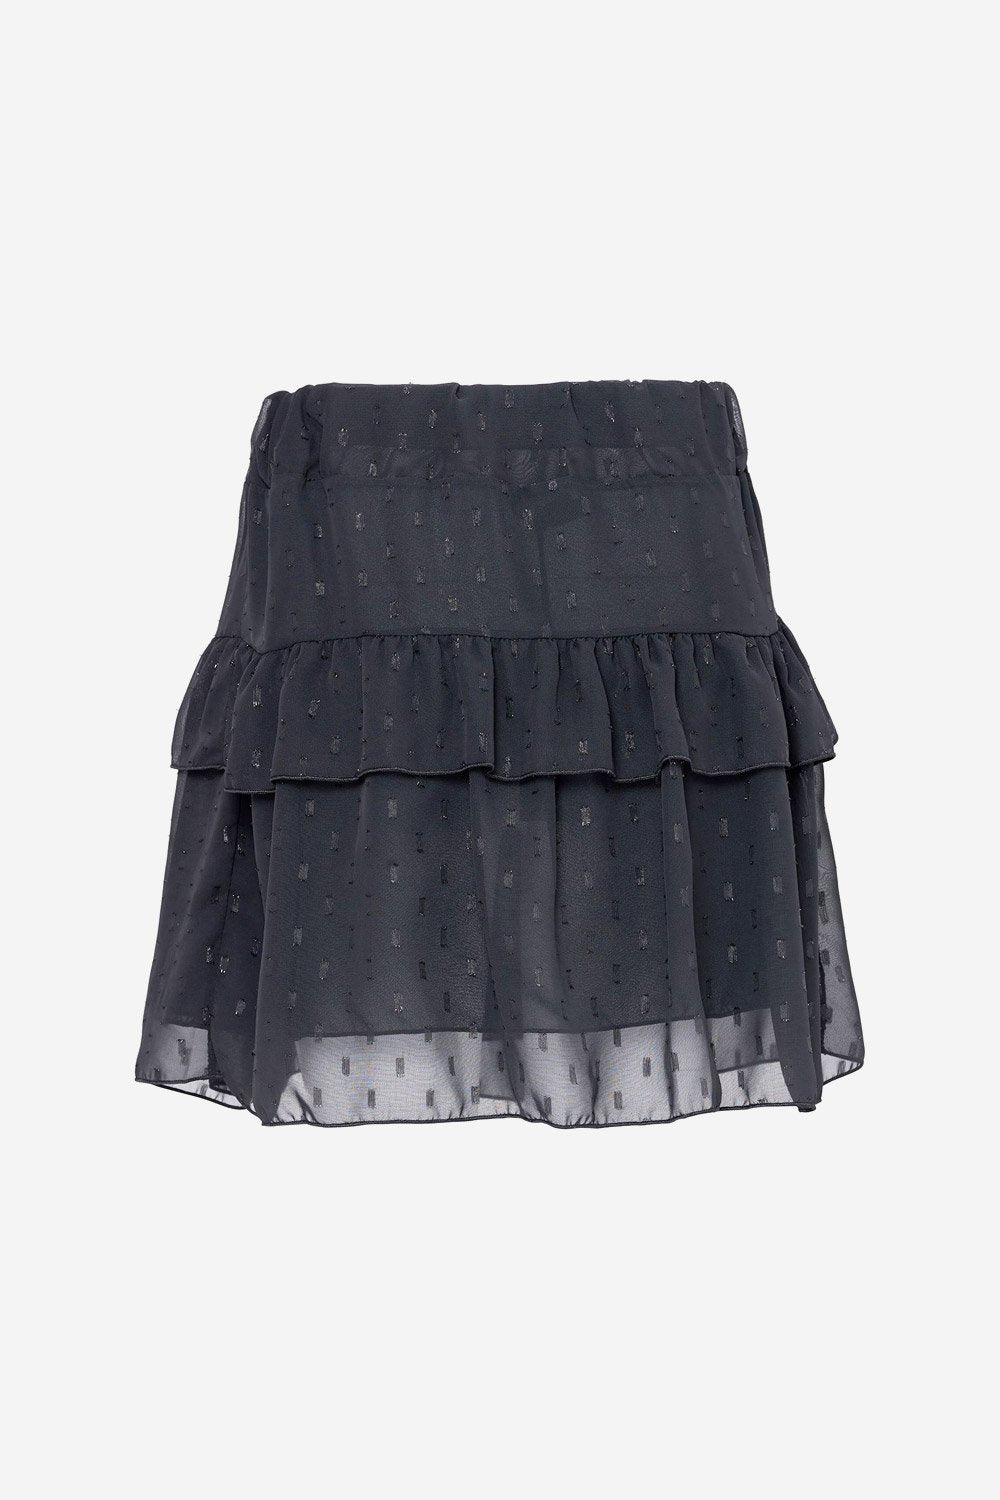 Zues Skirt Black